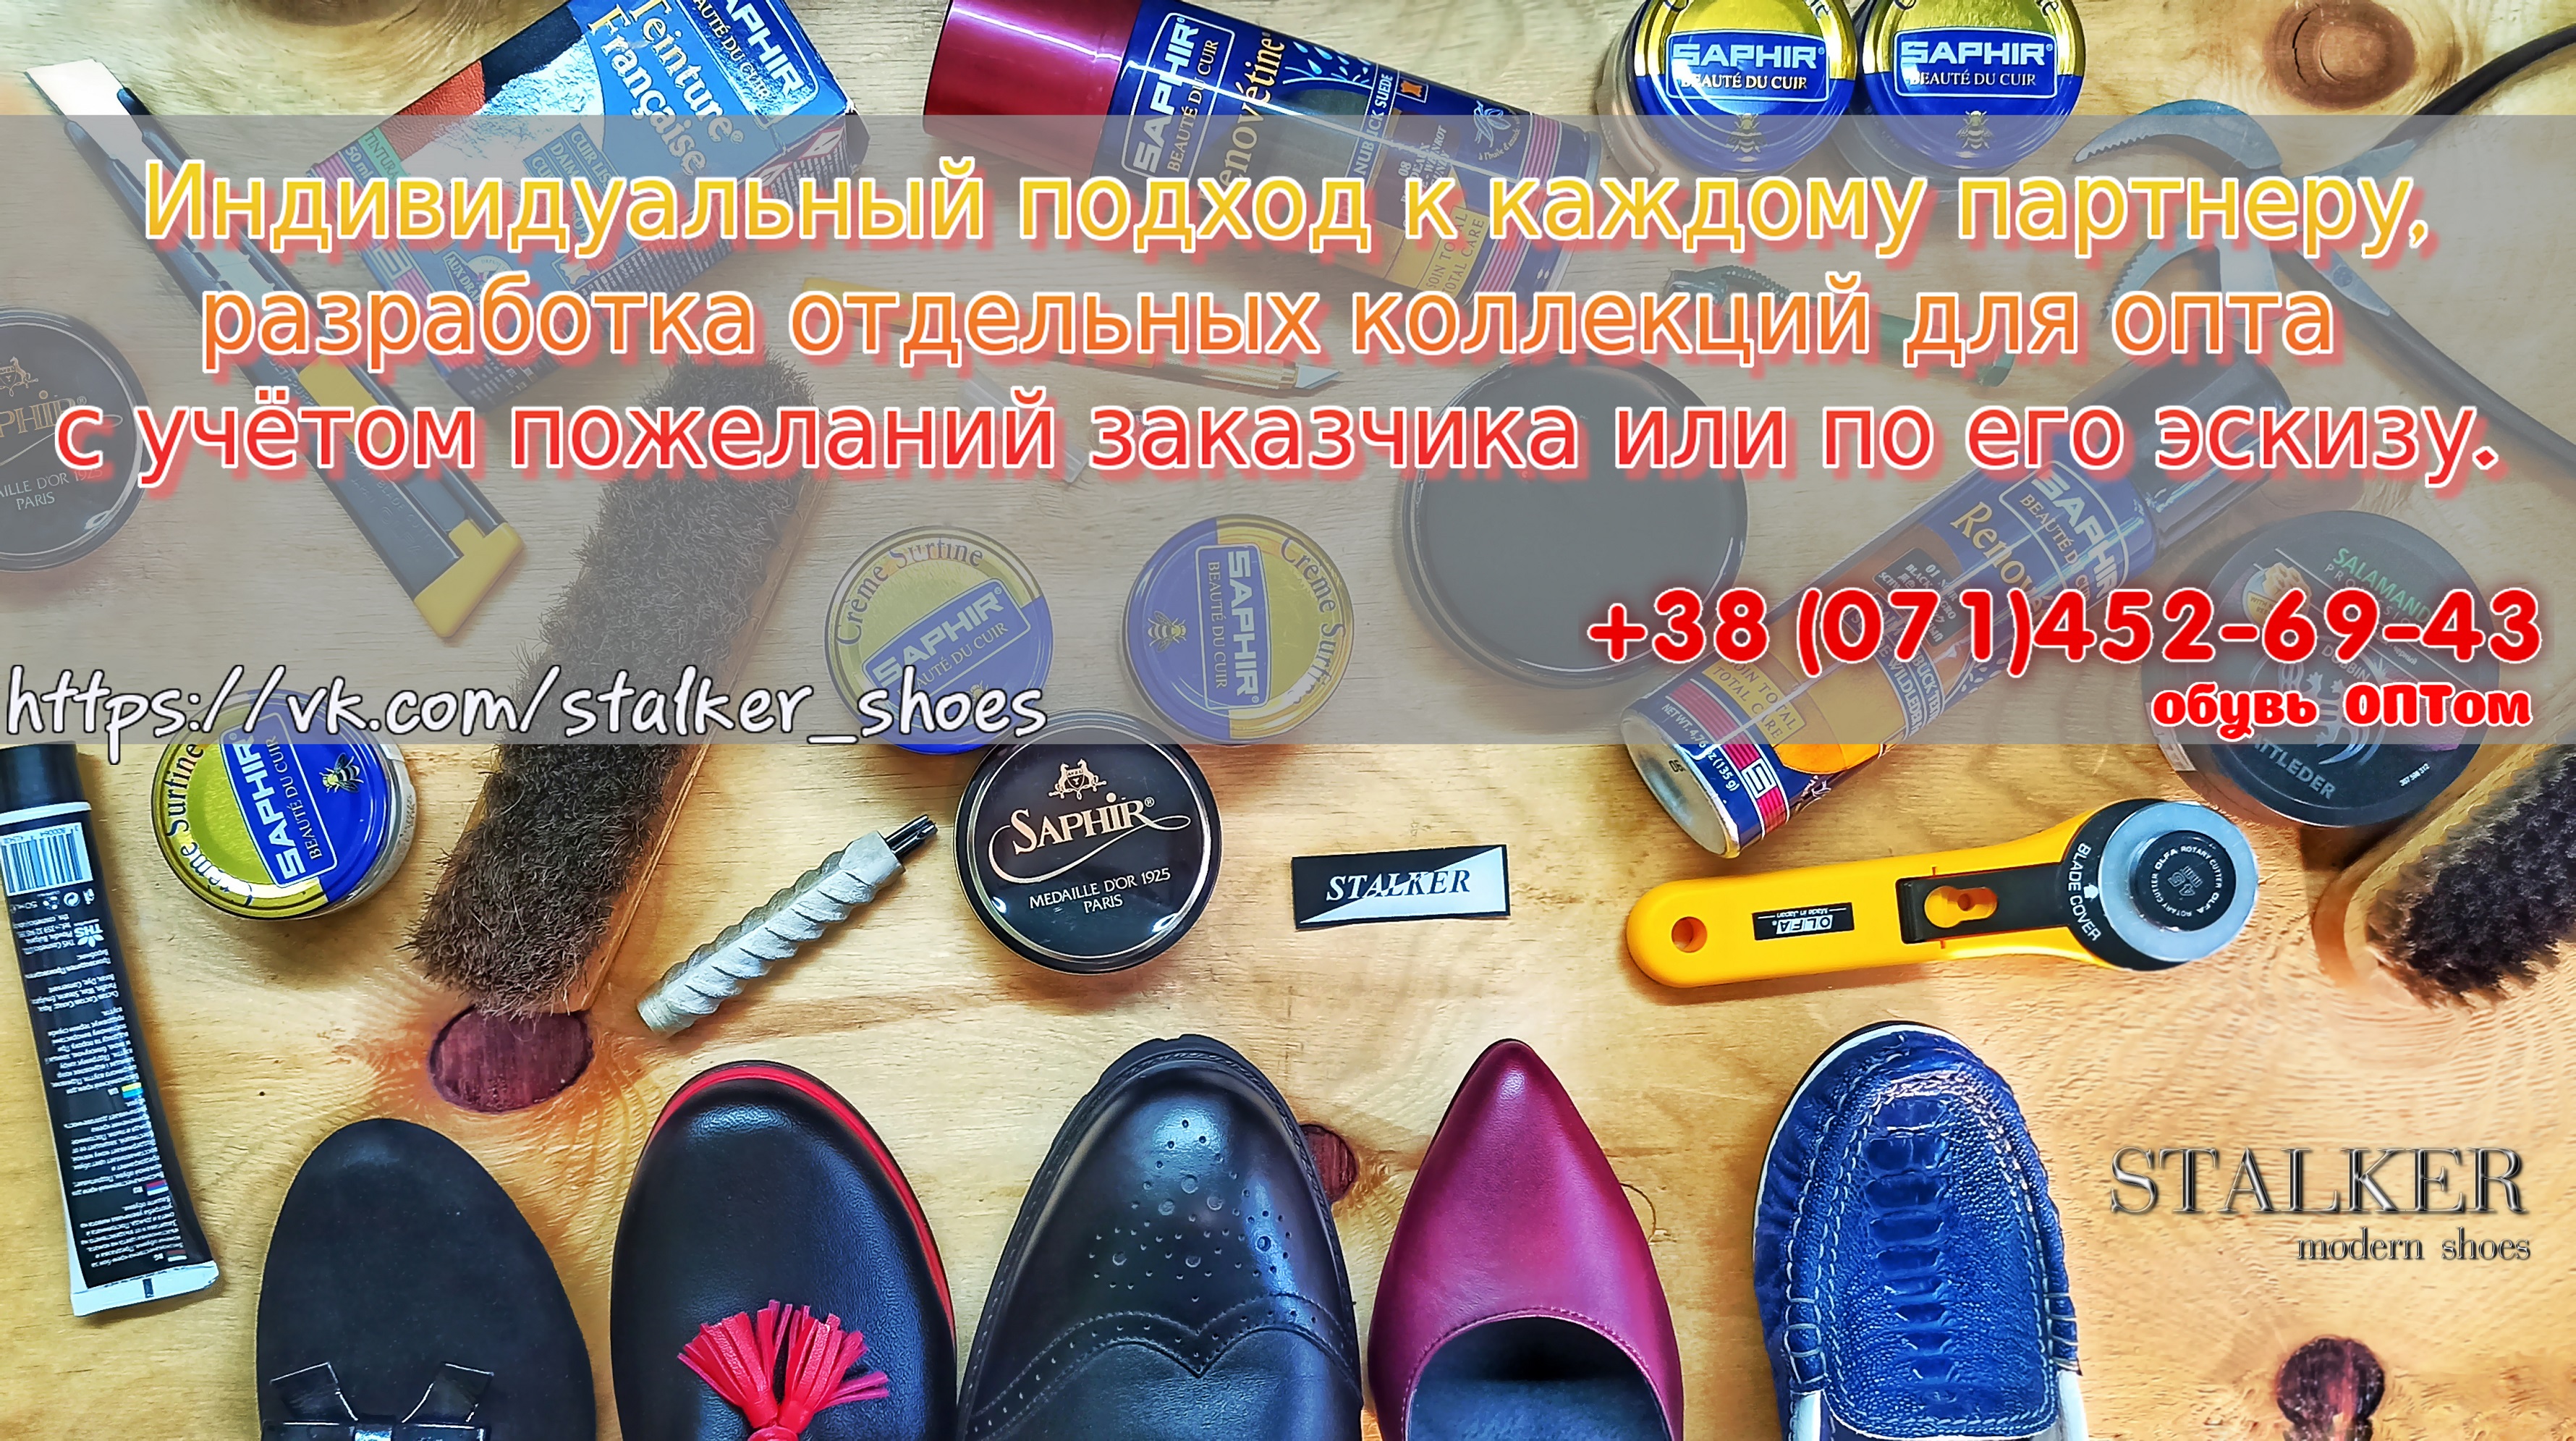 STALKER Обувь Донецк обувь ДНР магазин обуви Донецк обувь оптом